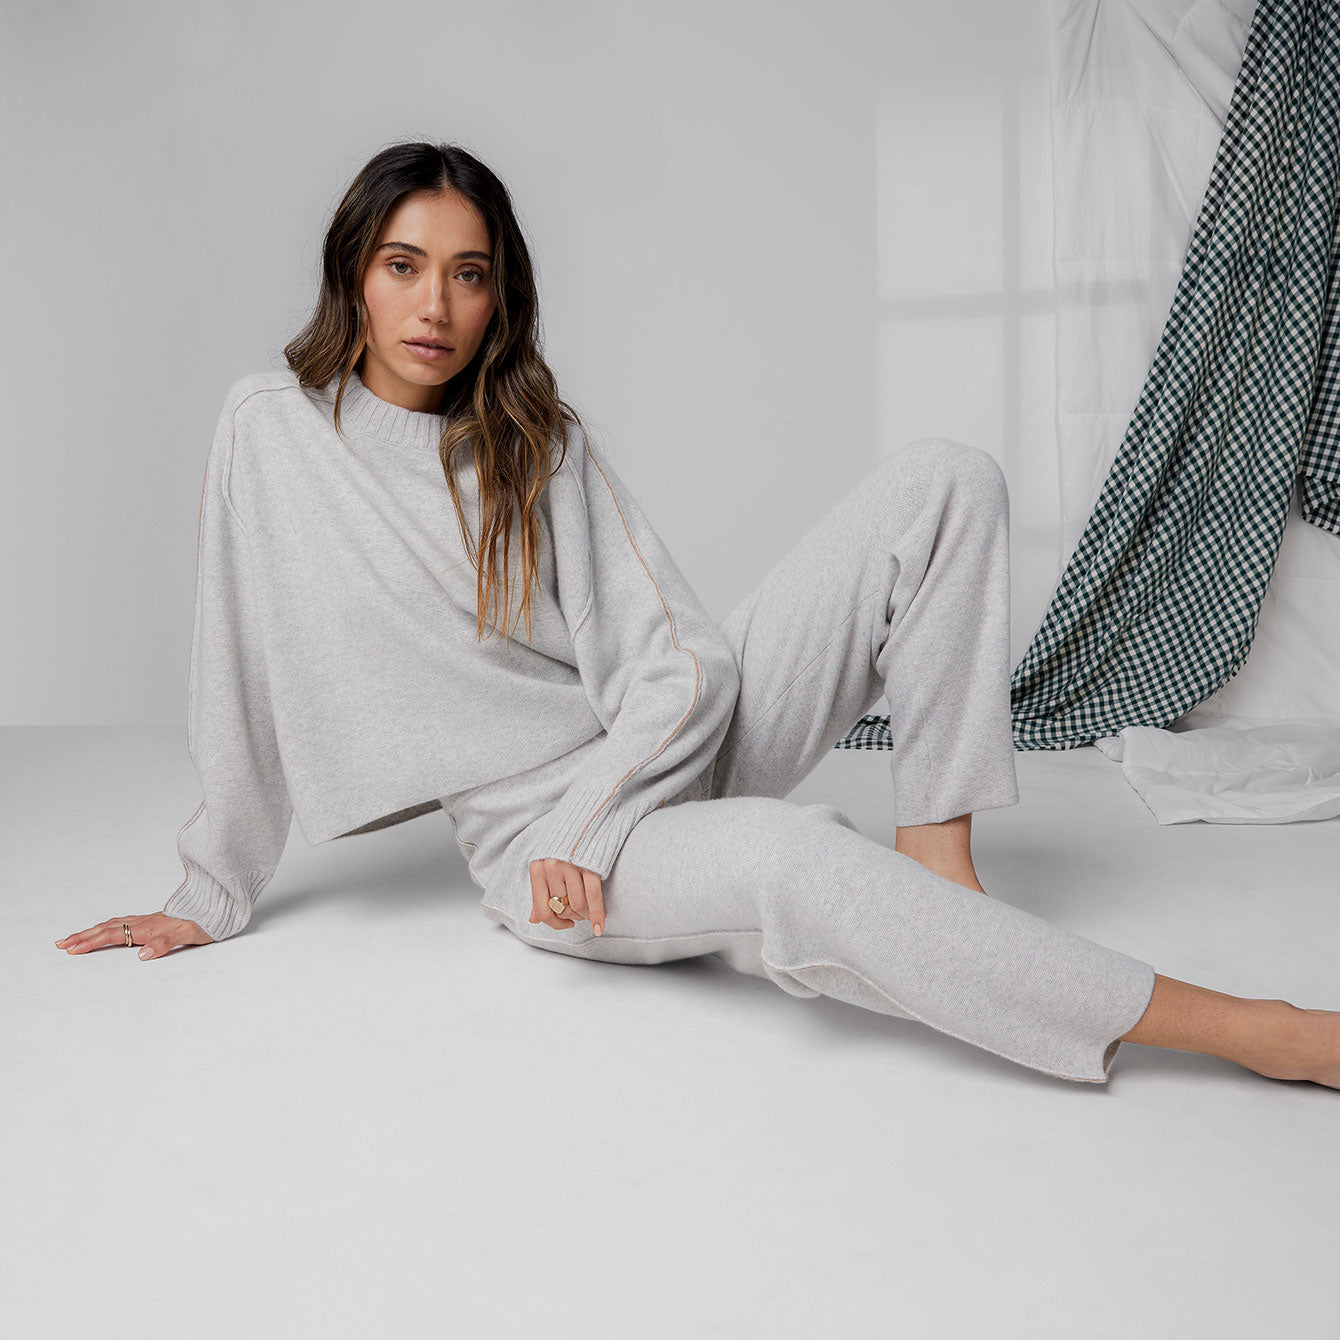 Cashmere Pajamas, Intimates & Sleepwear